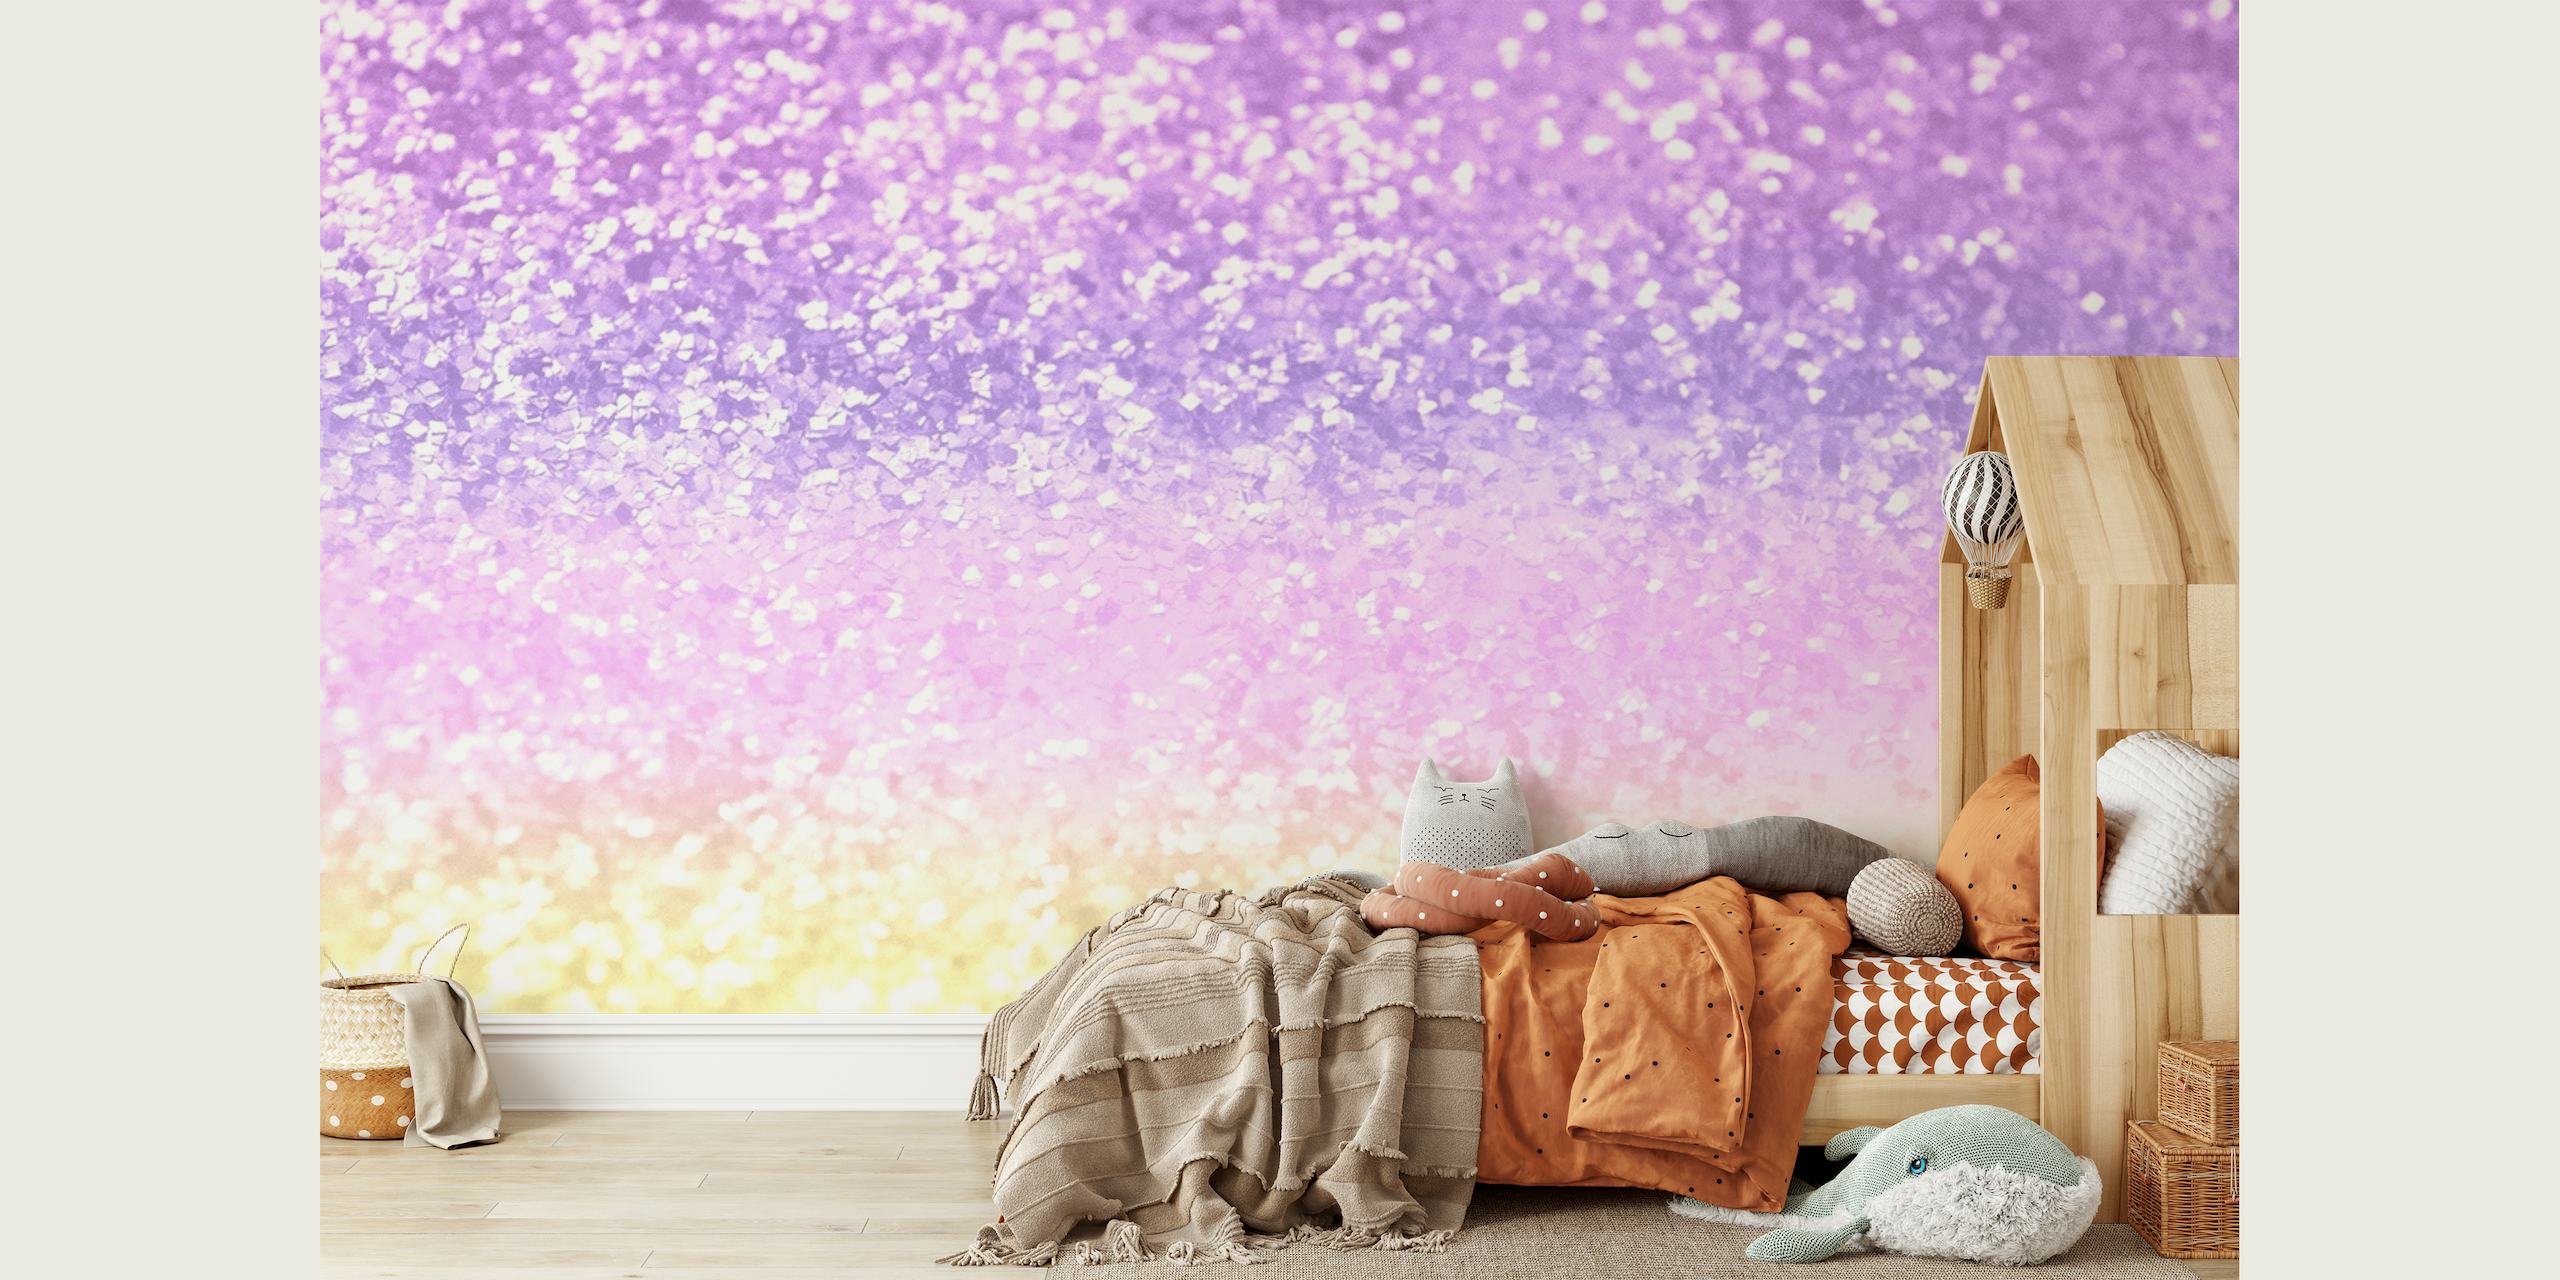 Pastel glitter vægmaleri med skinnende lilla, pink og gule nuancer perfekt til børneværelser.